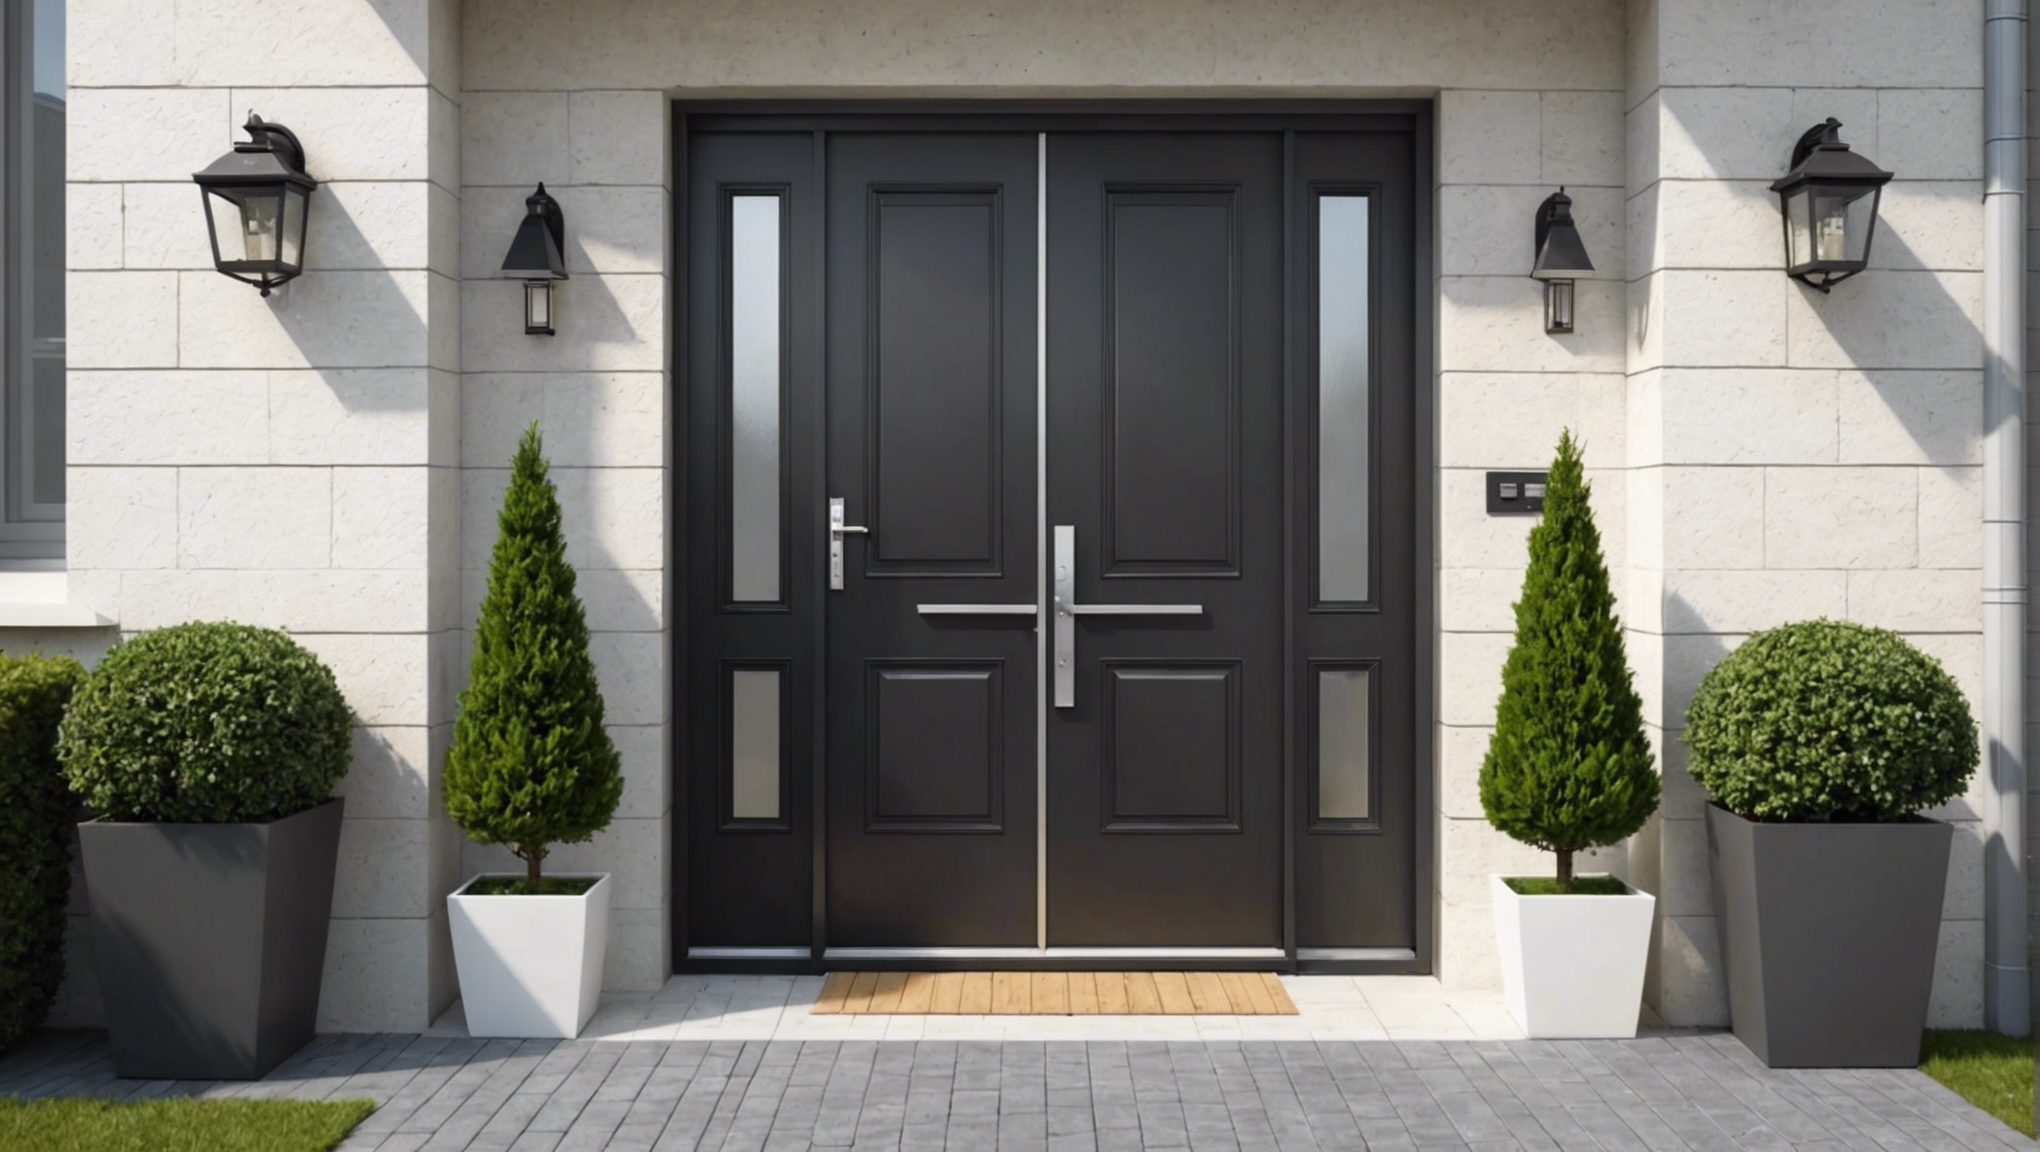 découvrez nos conseils pour choisir la meilleure porte d'entrée pour votre maison et améliorer à la fois l'esthétique, la sécurité et l'isolation de votre domicile.